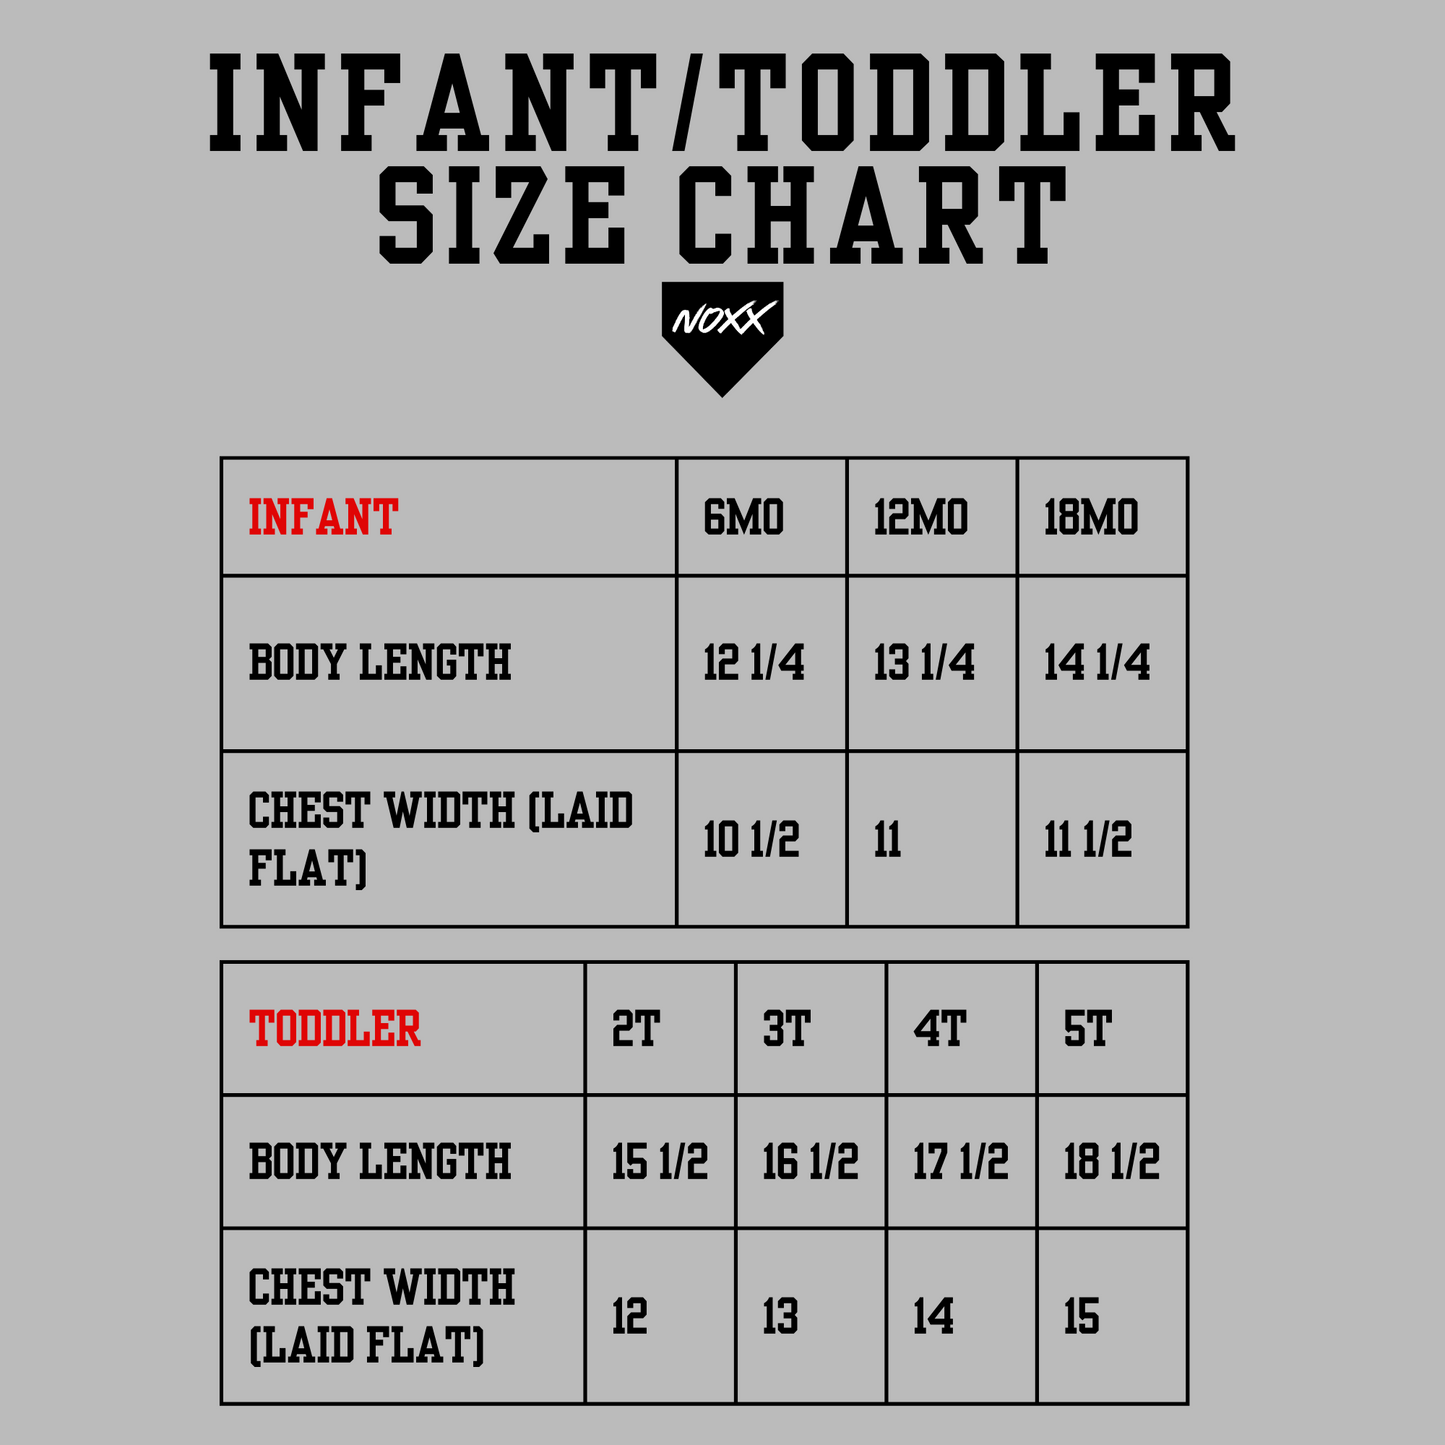 Infant/Toddler T-Shirt: Lil' Baller (Soccer)